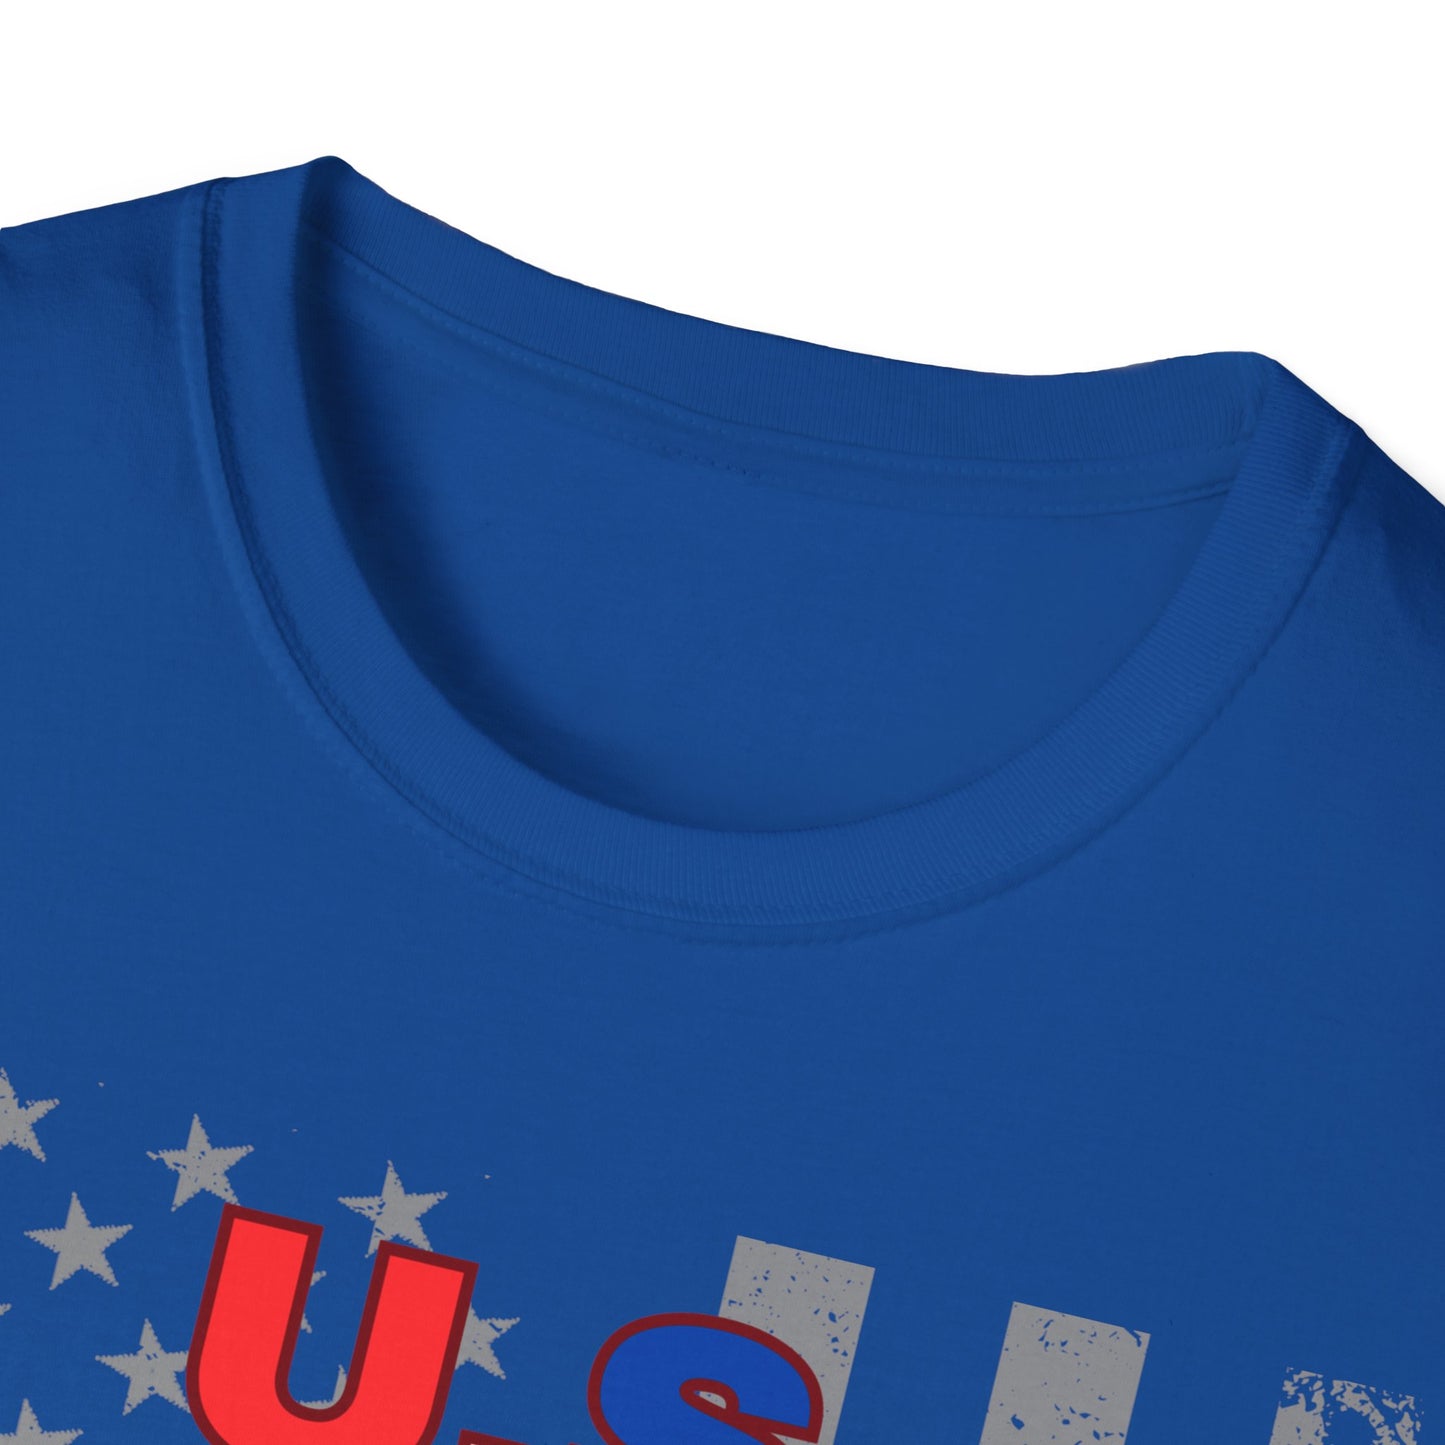 Unisex Softstyle (Marine Veteran) T-Shirt